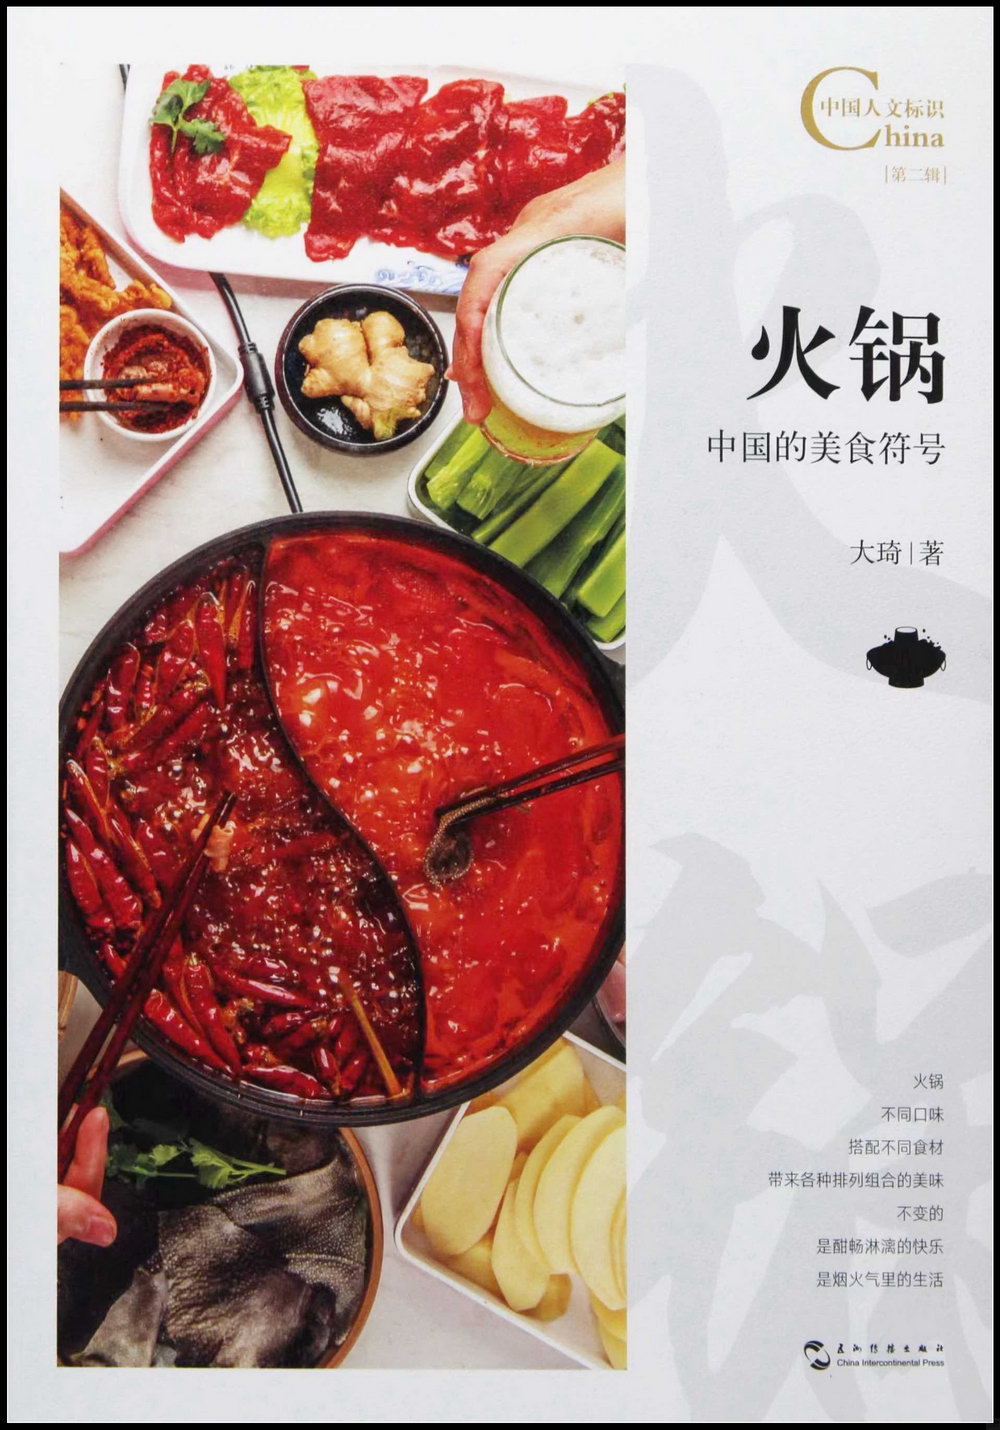 火鍋，中國的美食符號